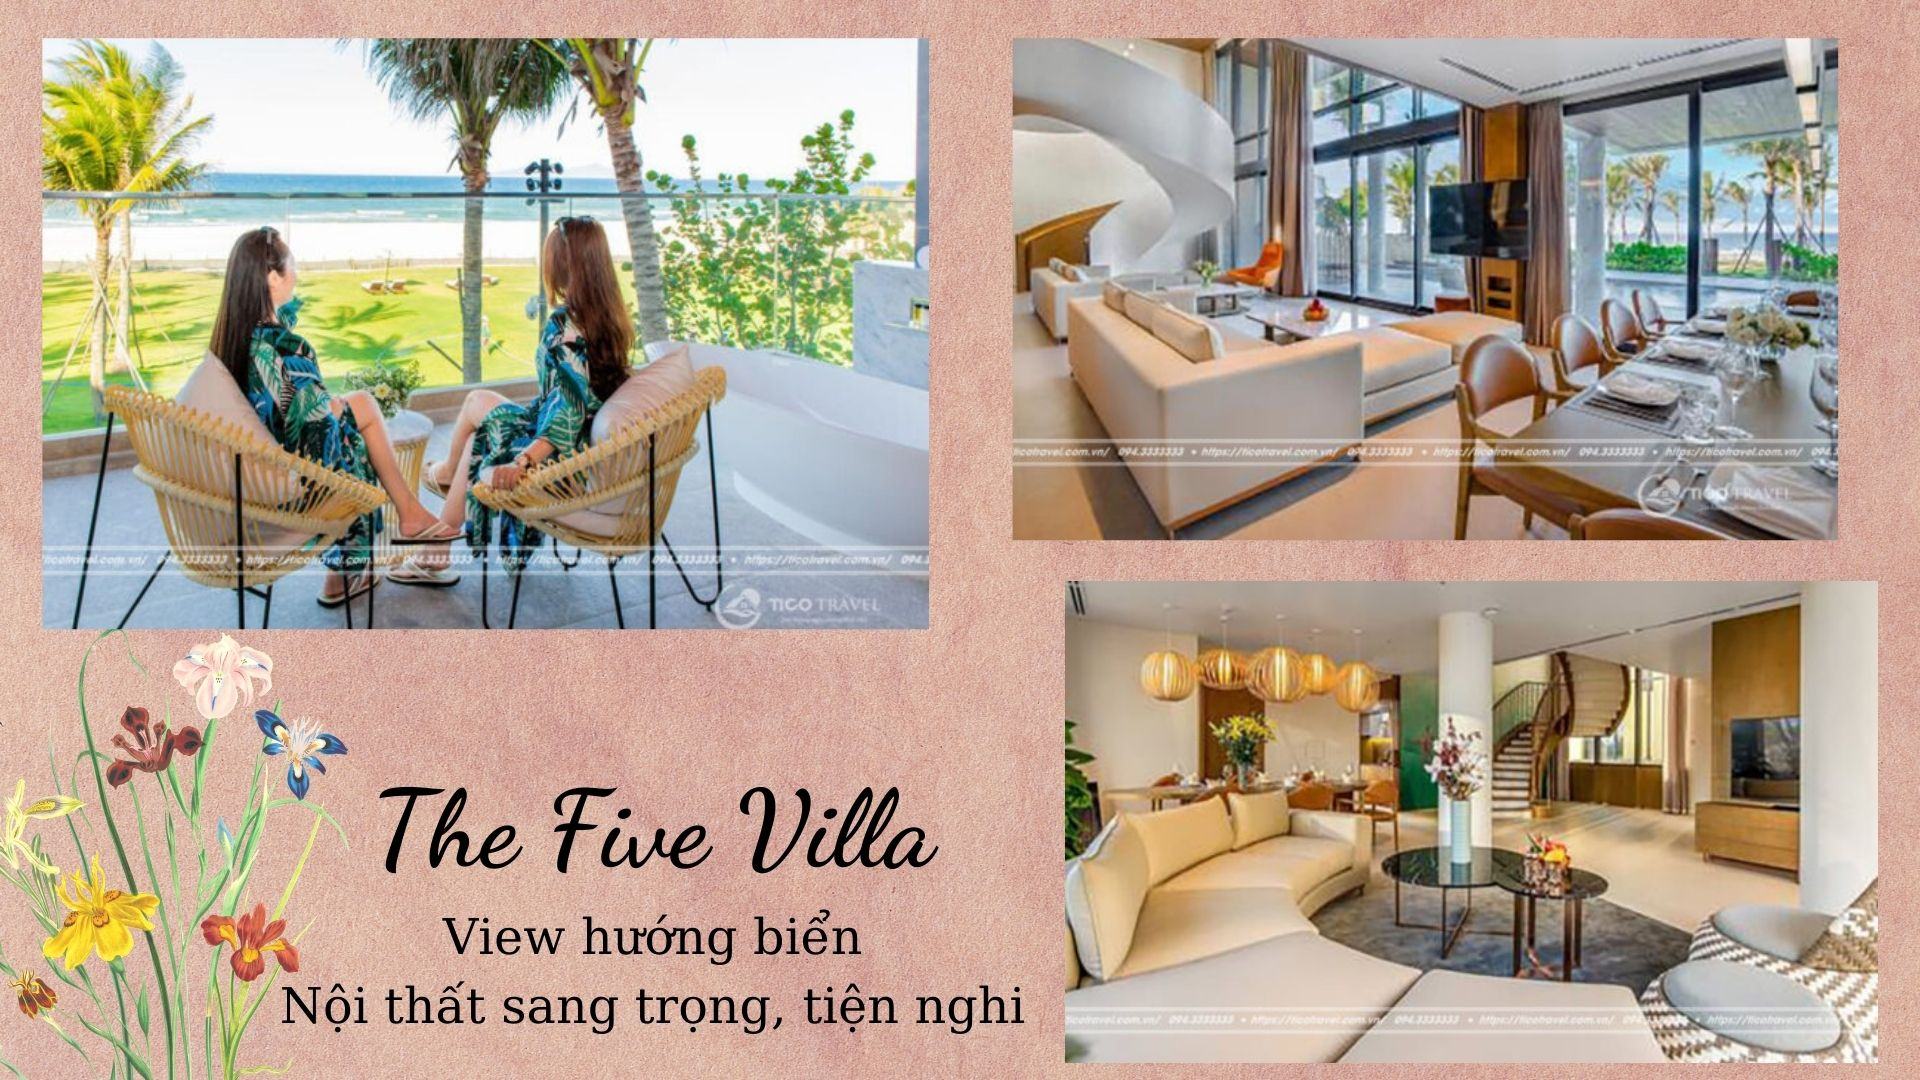 The Five Villa